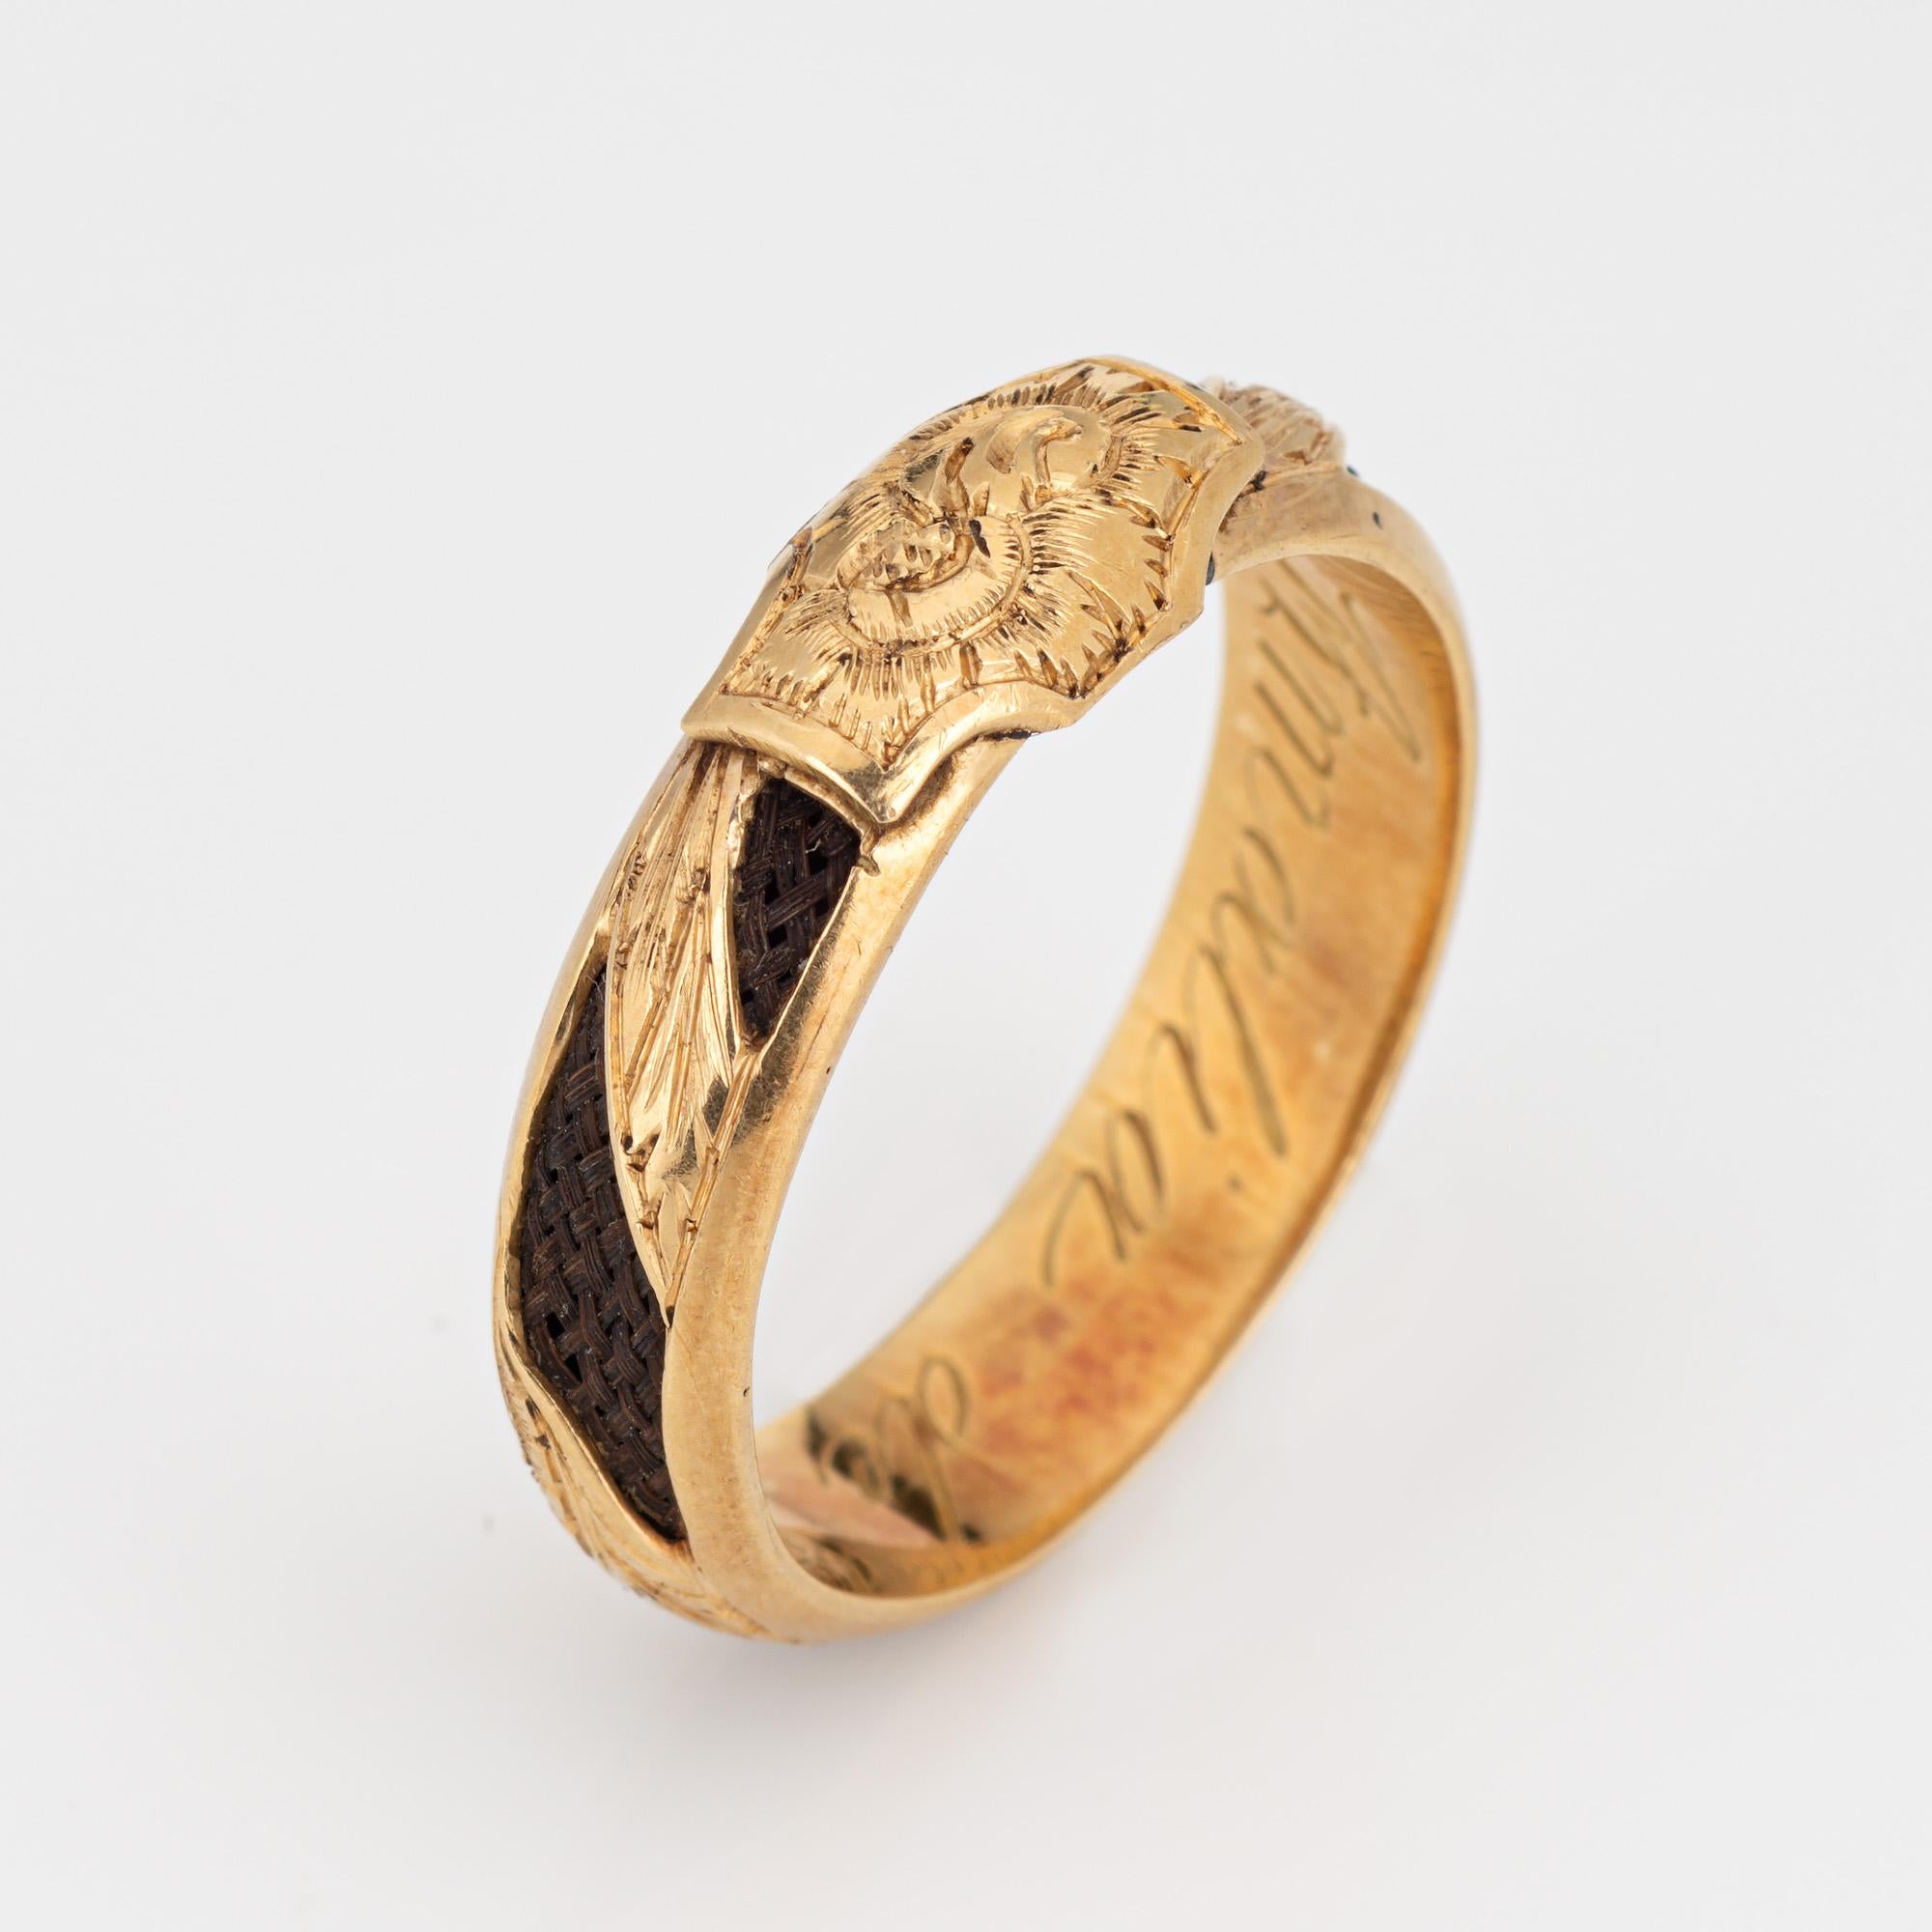 Fein detaillierter antiker viktorianischer Ring (CIRCA bis 1900) aus 18 Karat Gelbgold. 

Im viktorianischen Zeitalter hatte Haarschmuck einen immensen sentimentalen Wert und diente als einzigartige und ergreifende Form des Gedenkens und der Trauer.